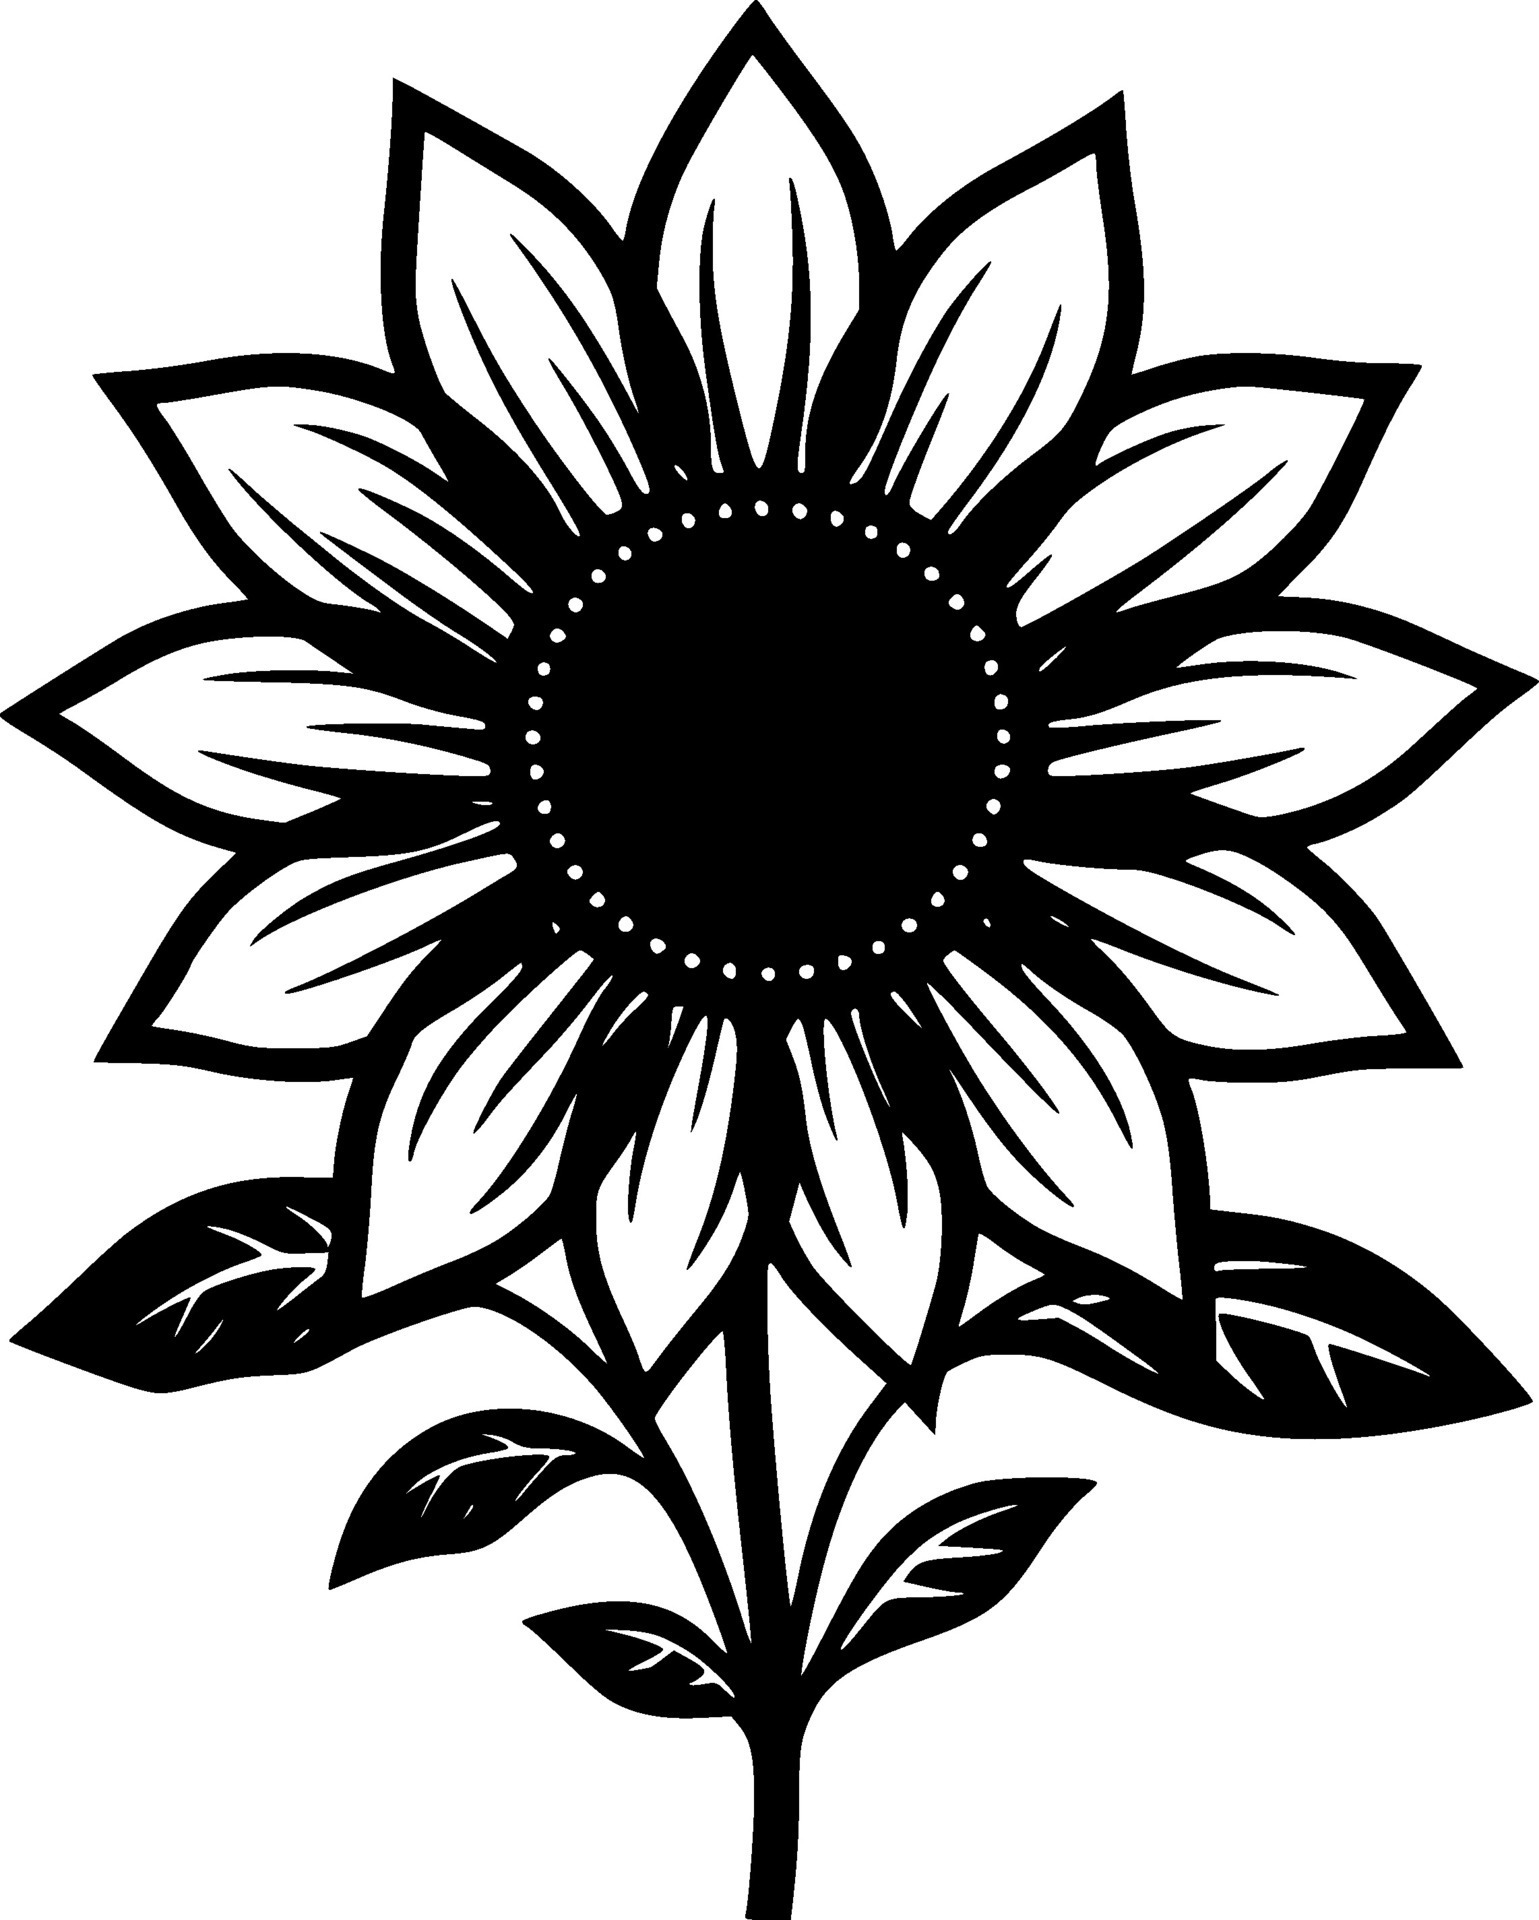 Flower, Black and White Vector illustration 26736220 Vector Art at Vecteezy